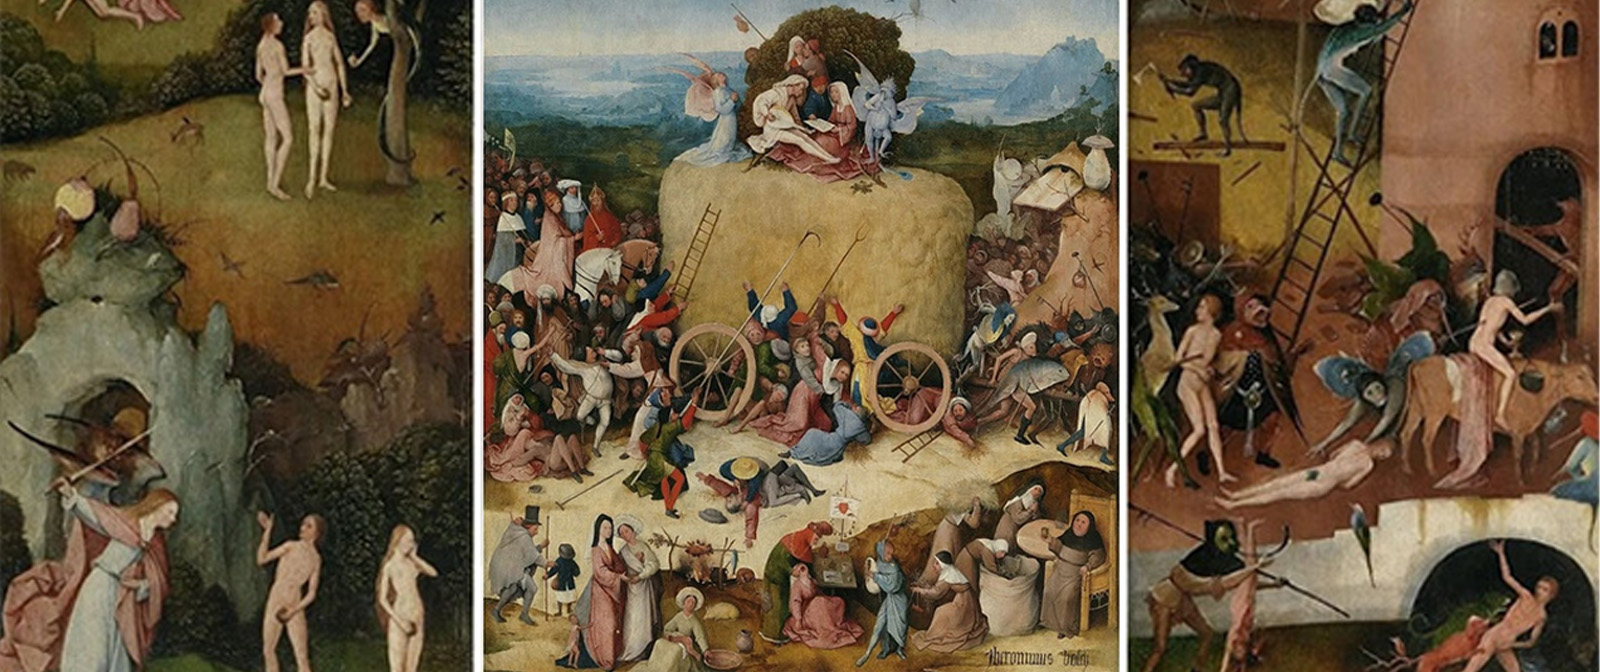 ​«Воз сена» —  удивительная картина Иеронима Босха об истинной природе зла.  Какие глубокие смыслы заложил в неё художник?